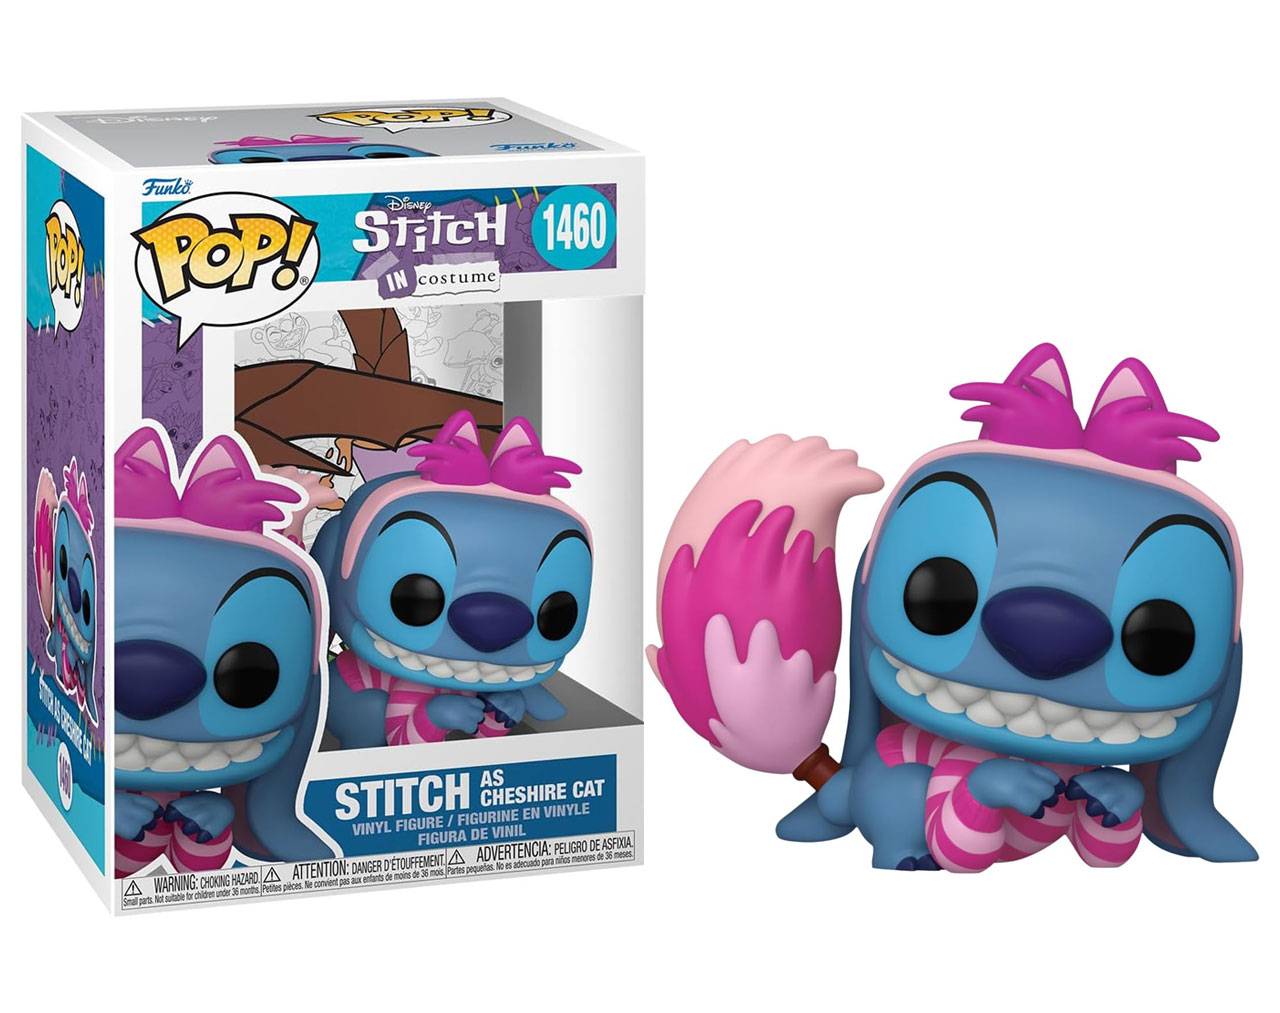 Stitch as Cheshire Cat (Alice in Wonderland) - Stitch in Costume Pop! Vinyl